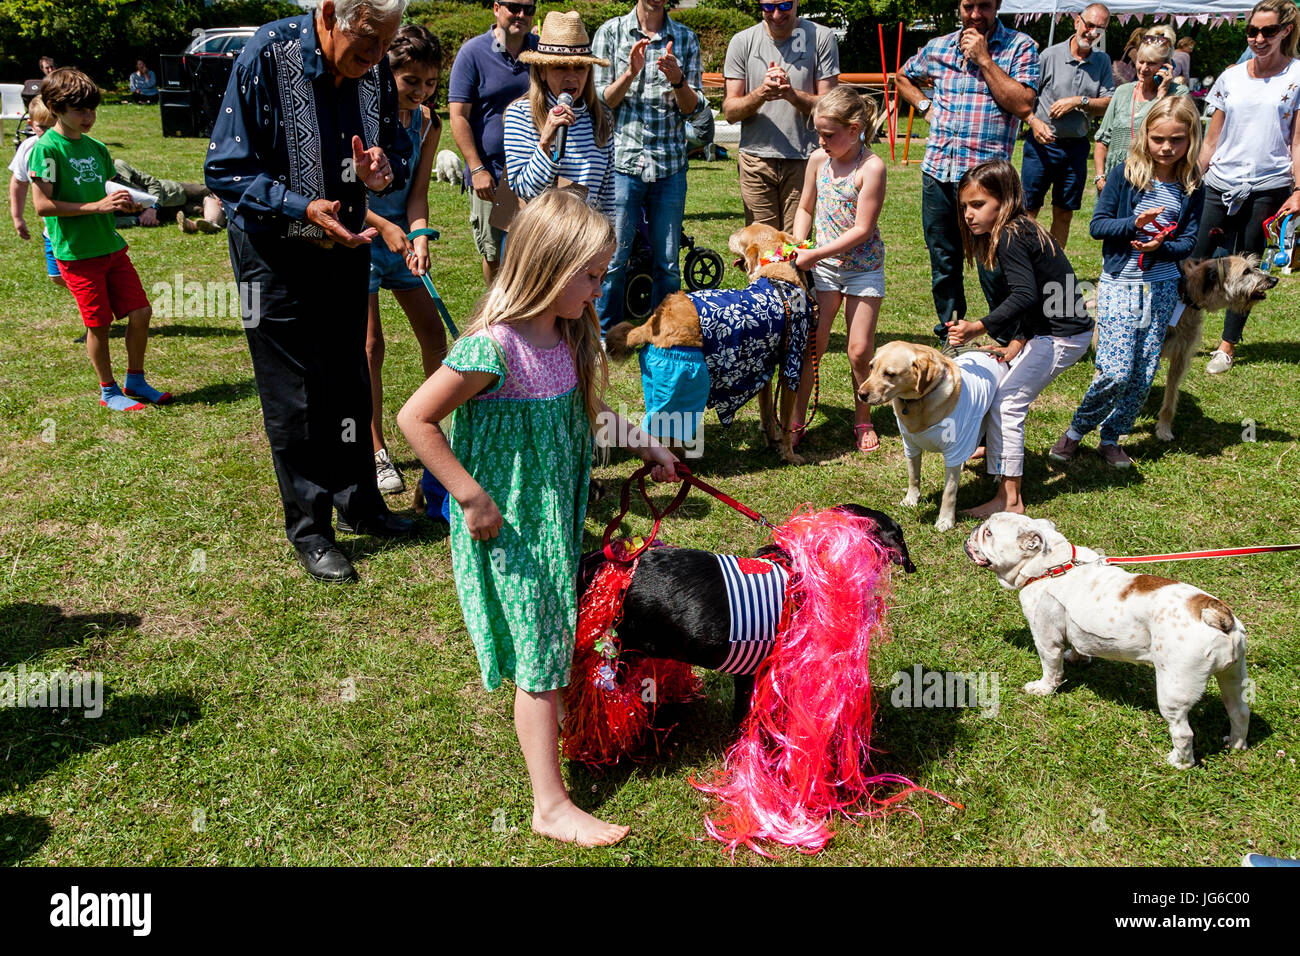 Bambini locali con i loro animali domestici prendere parte in un costume Dog Show presso il villaggio di Kingston Fete, Kingston, East Sussex, Regno Unito Foto Stock